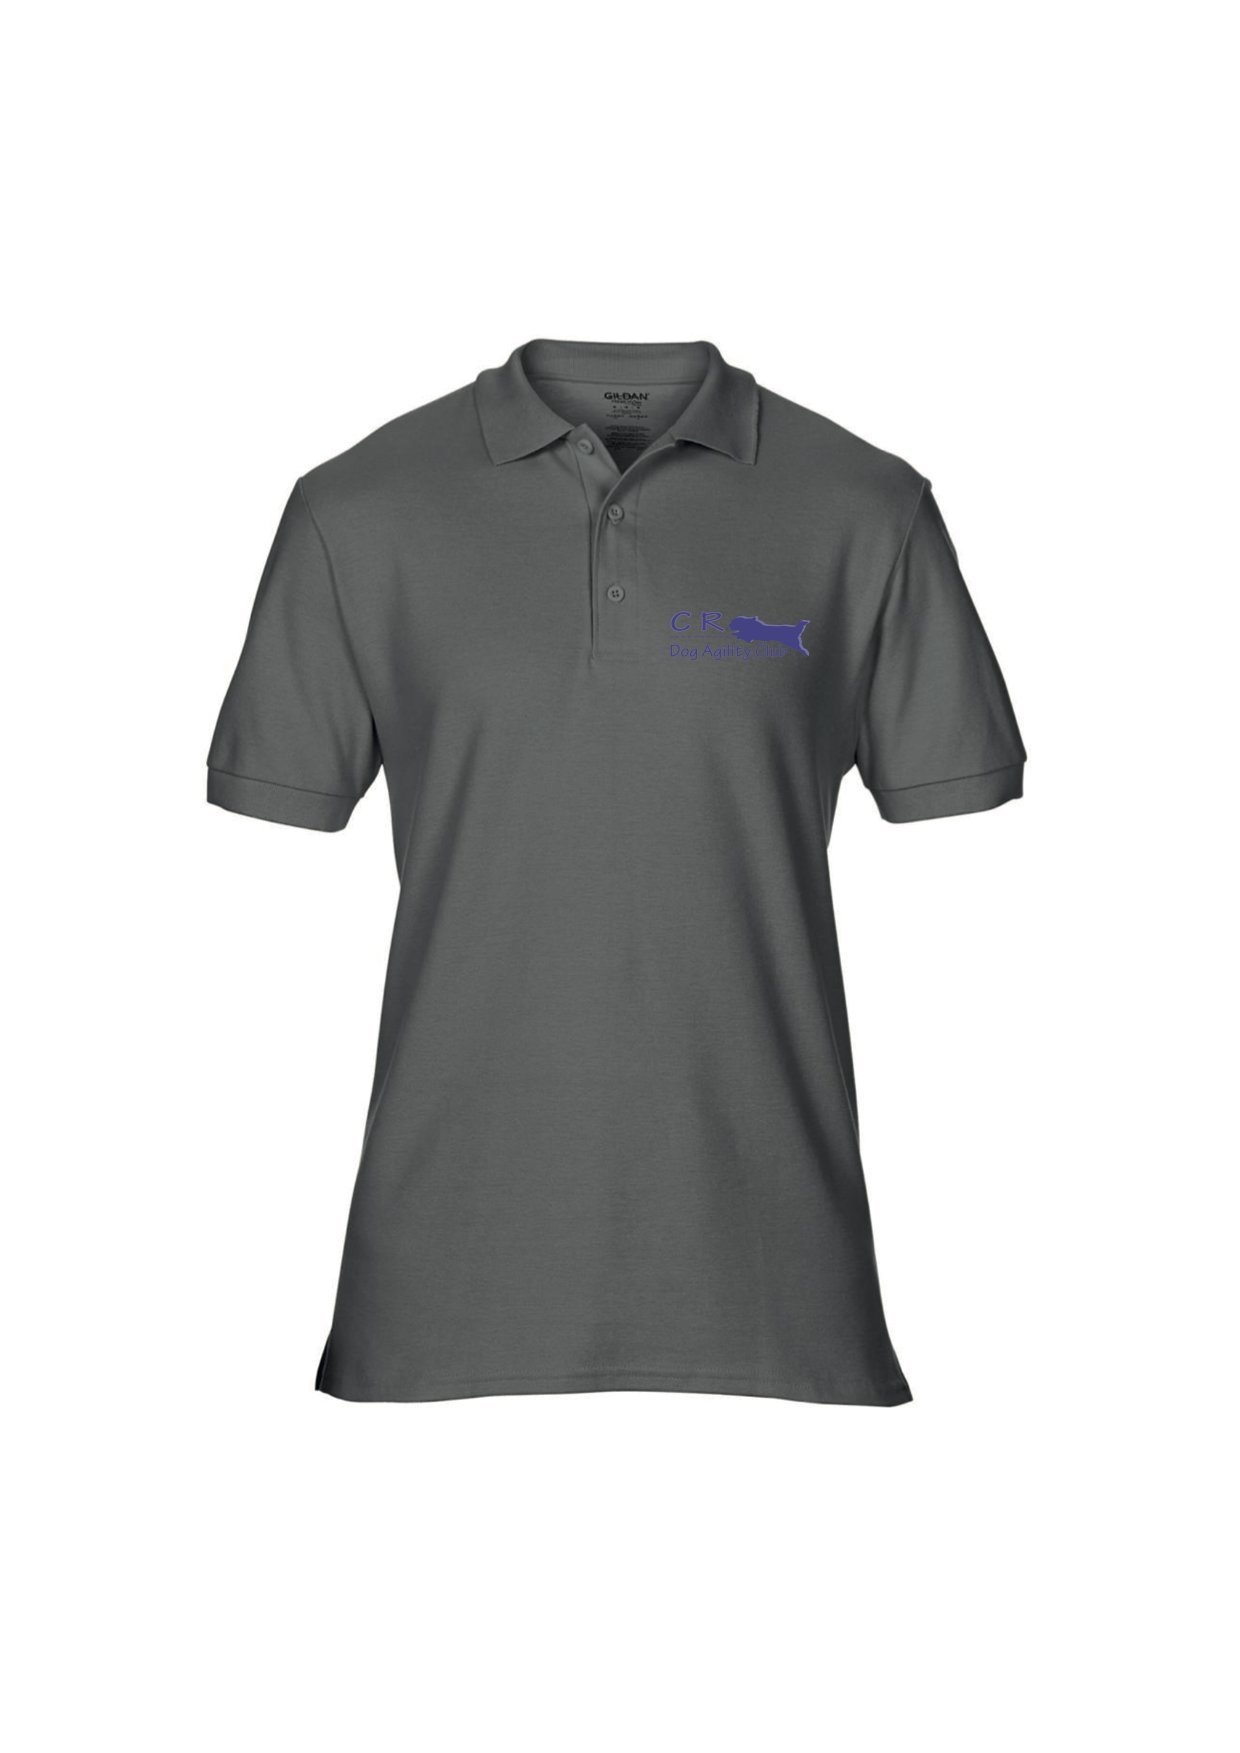 CR Agility Polo shirt Medium – Pooch